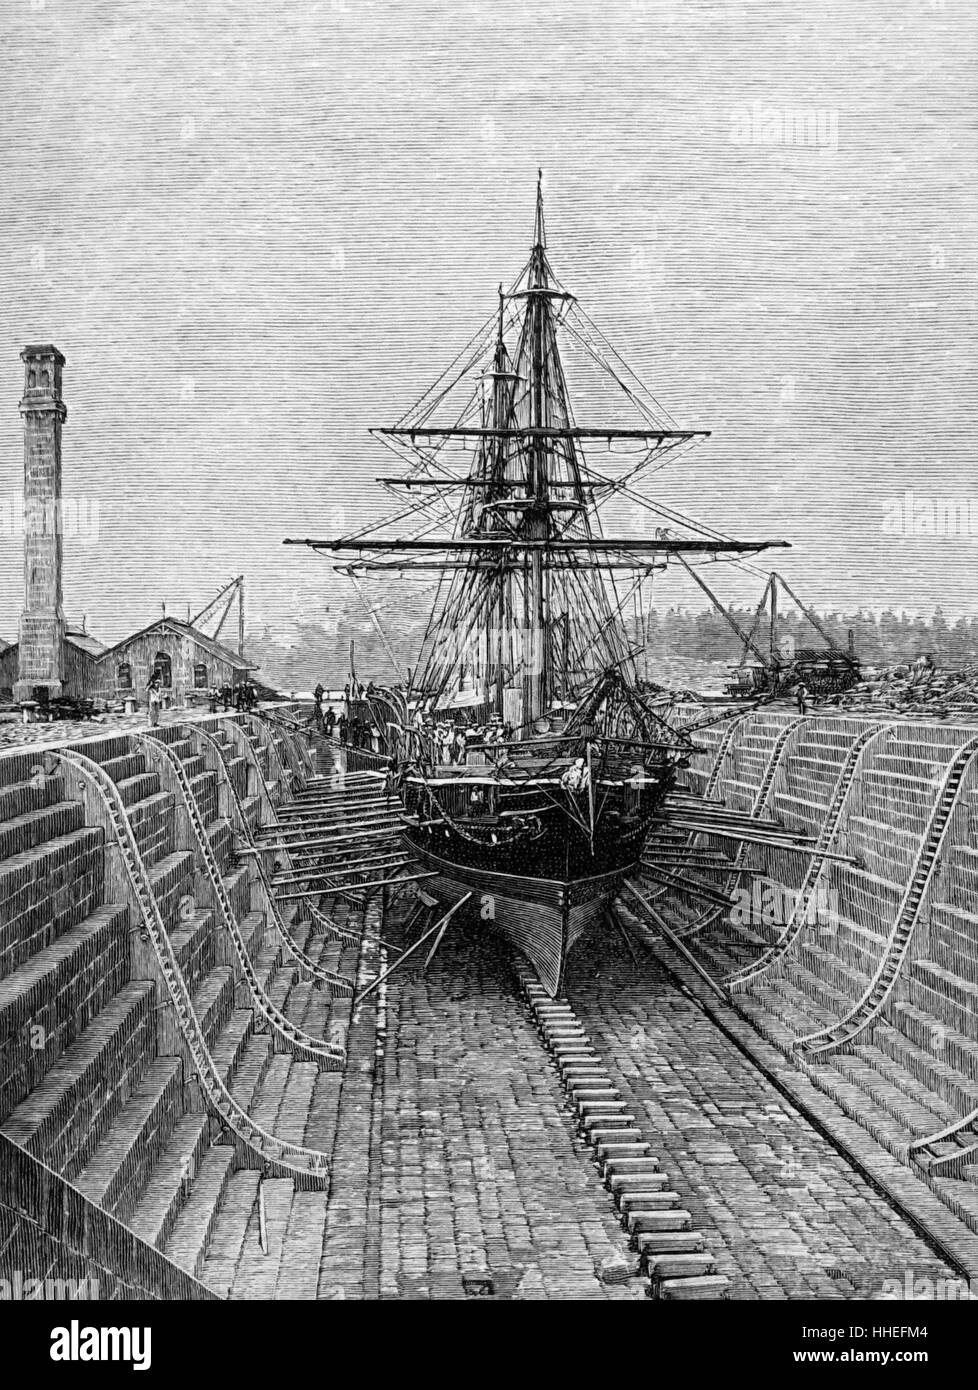 Ilustración de los diques secos en el Victoria Docks. Fecha del siglo XIX Foto de stock